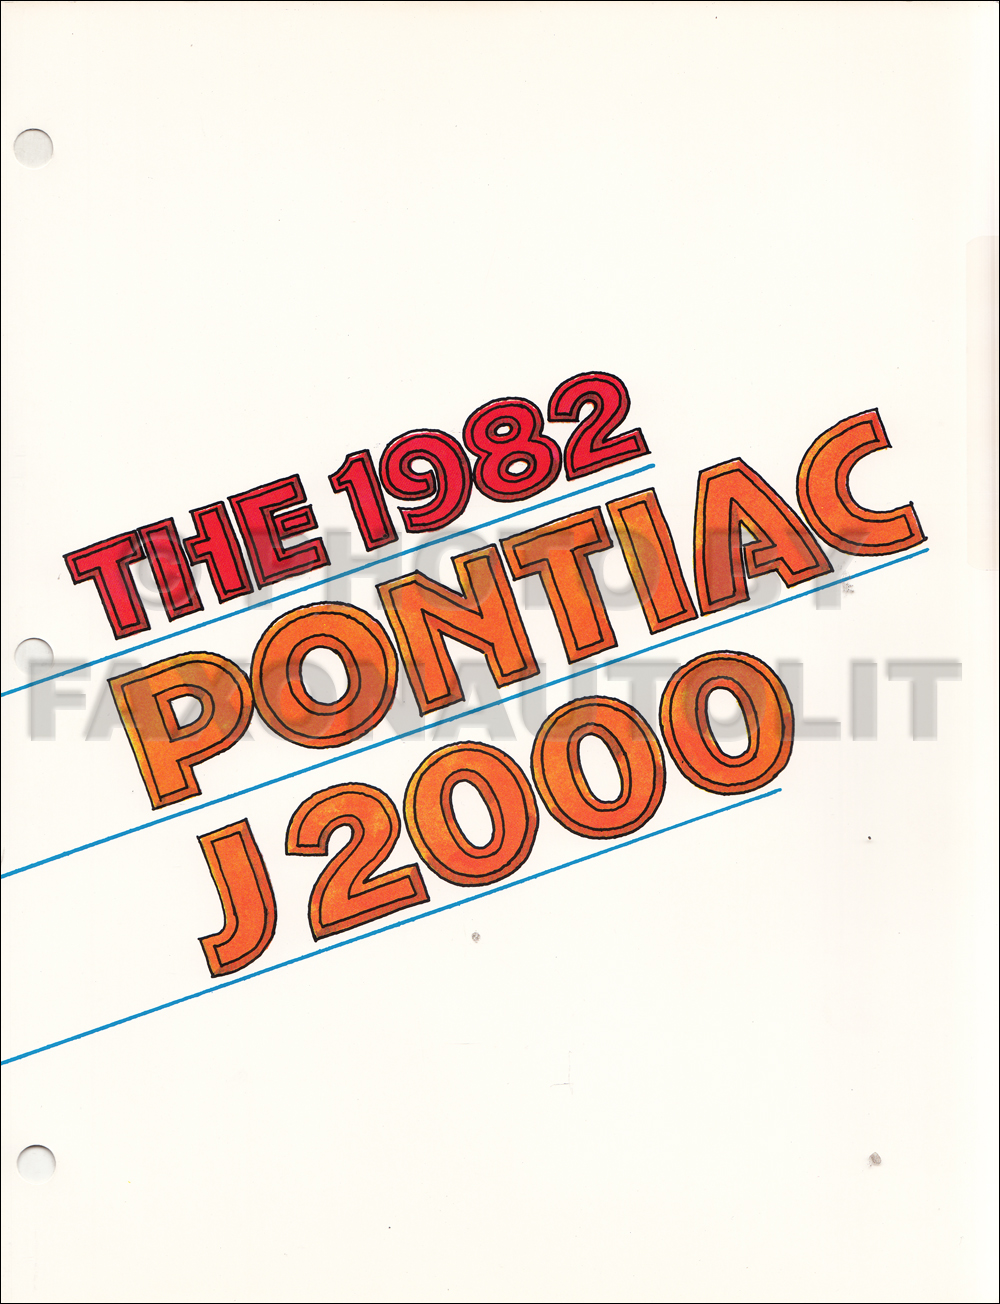 1982 Pontiac J2000 Color & Upholstery Album Insert Original